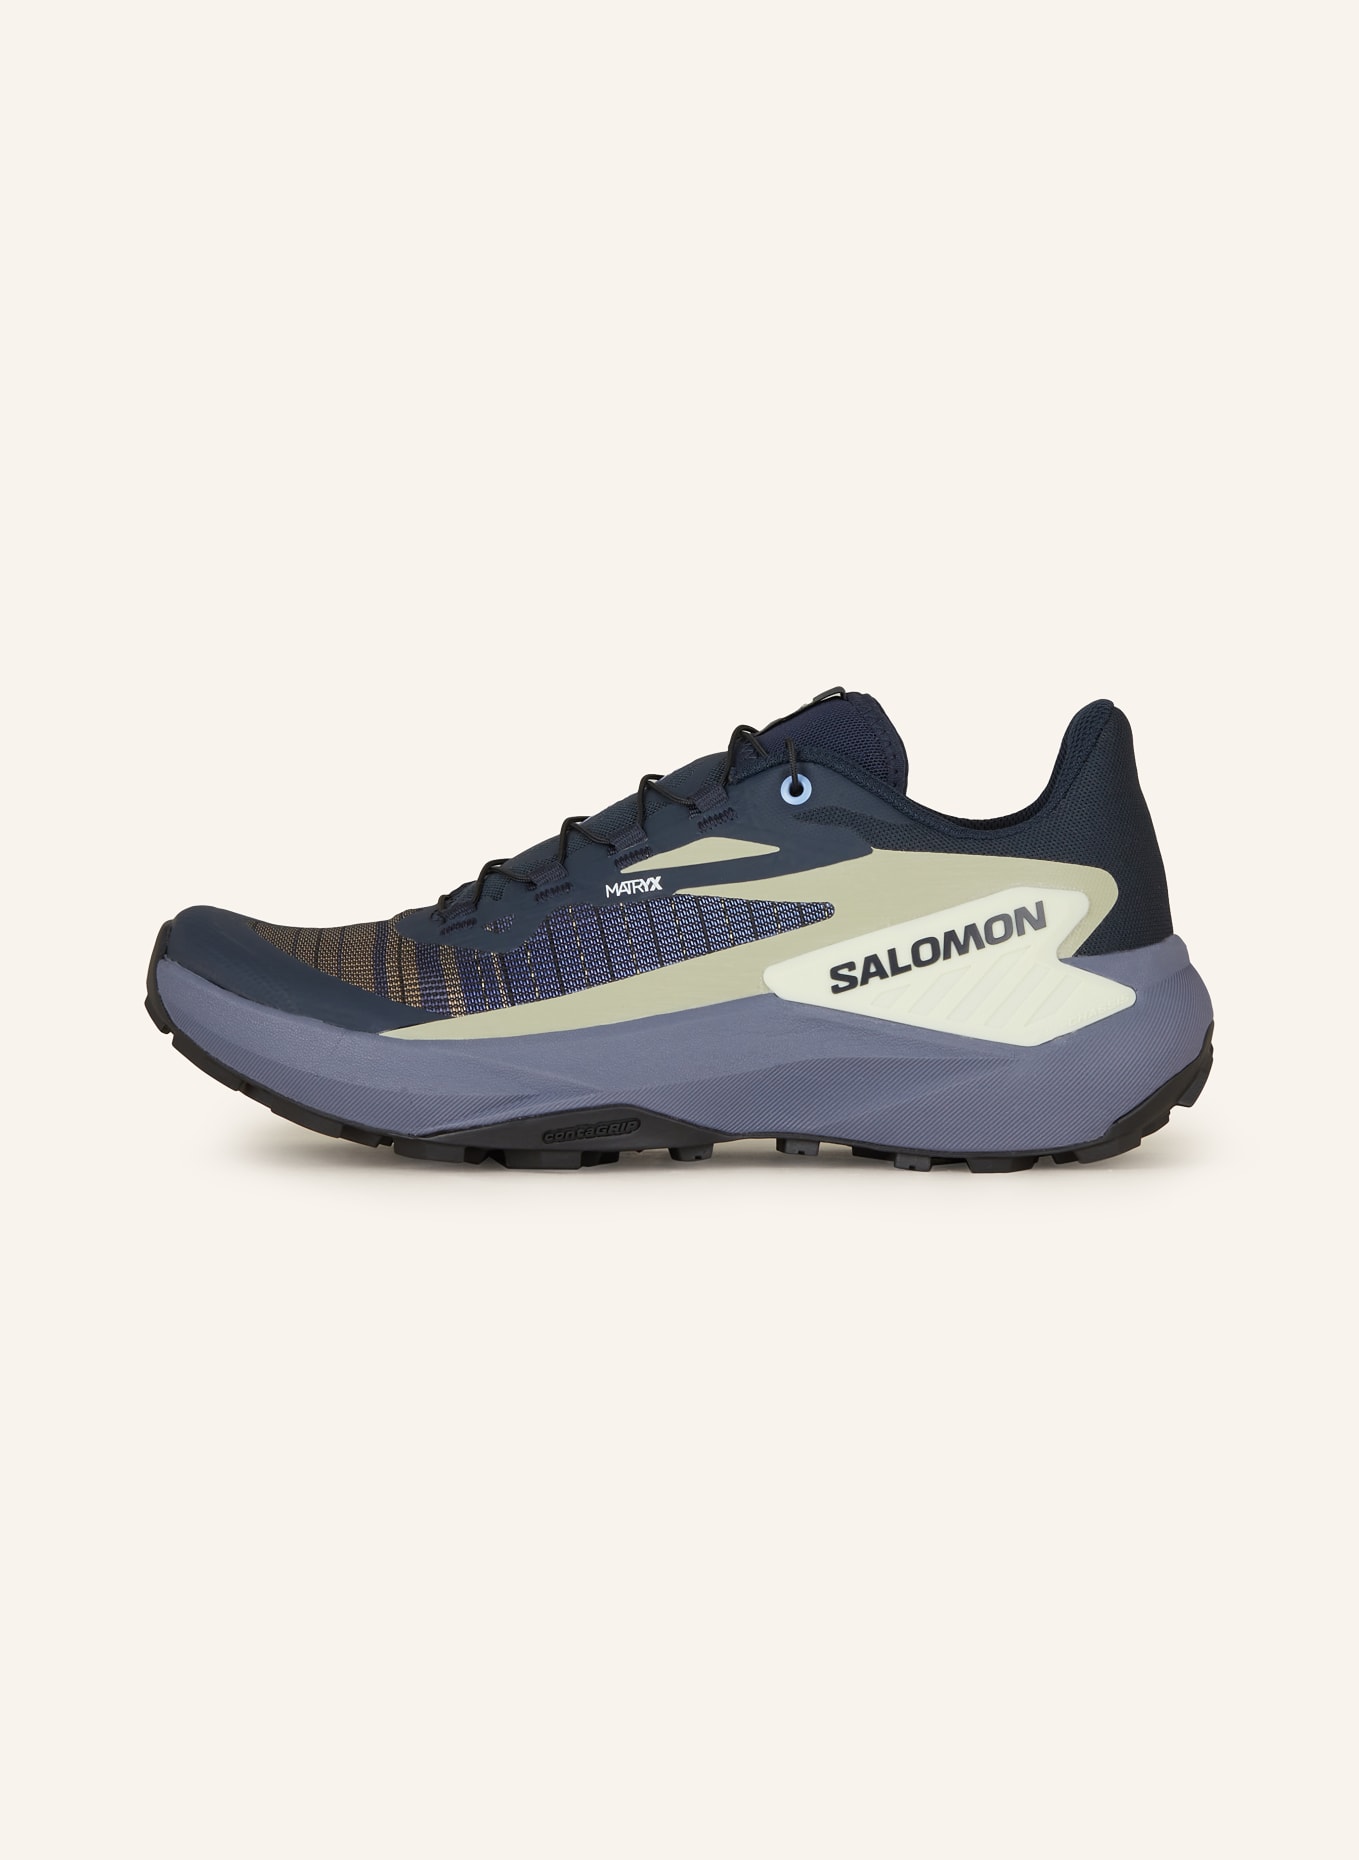 SALOMON Trailrunning-Schuhe GENESIS, Farbe: BLAU/ SCHWARZ/ KHAKI (Bild 4)